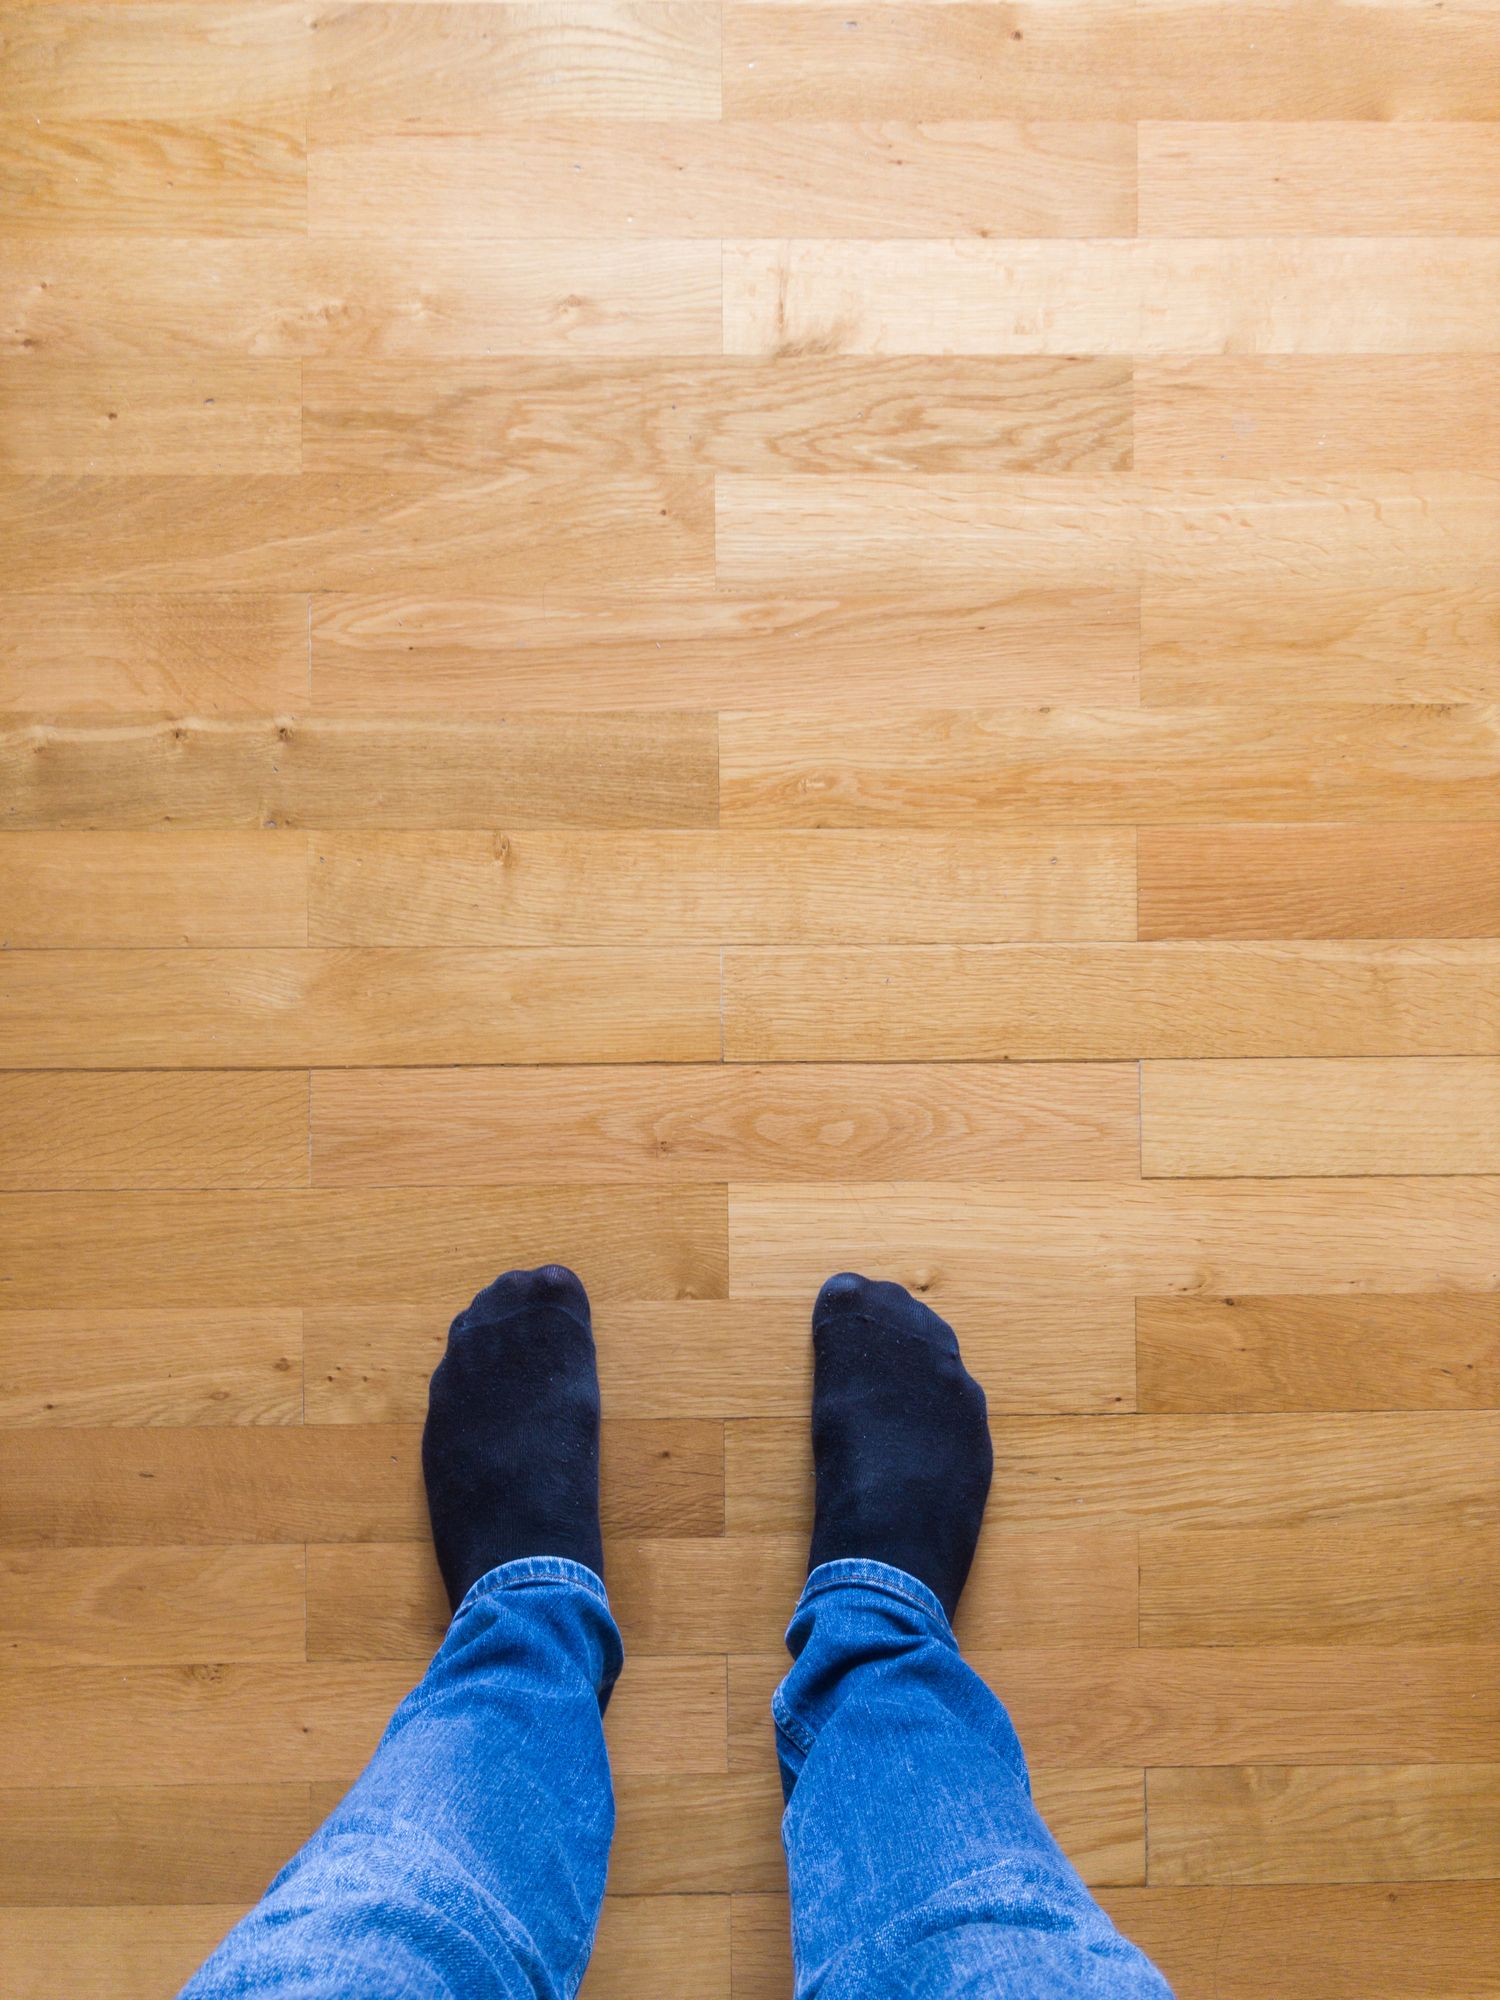 How To Fix A Squeaky Floor, How To Find Floor Joists Under Hardwood